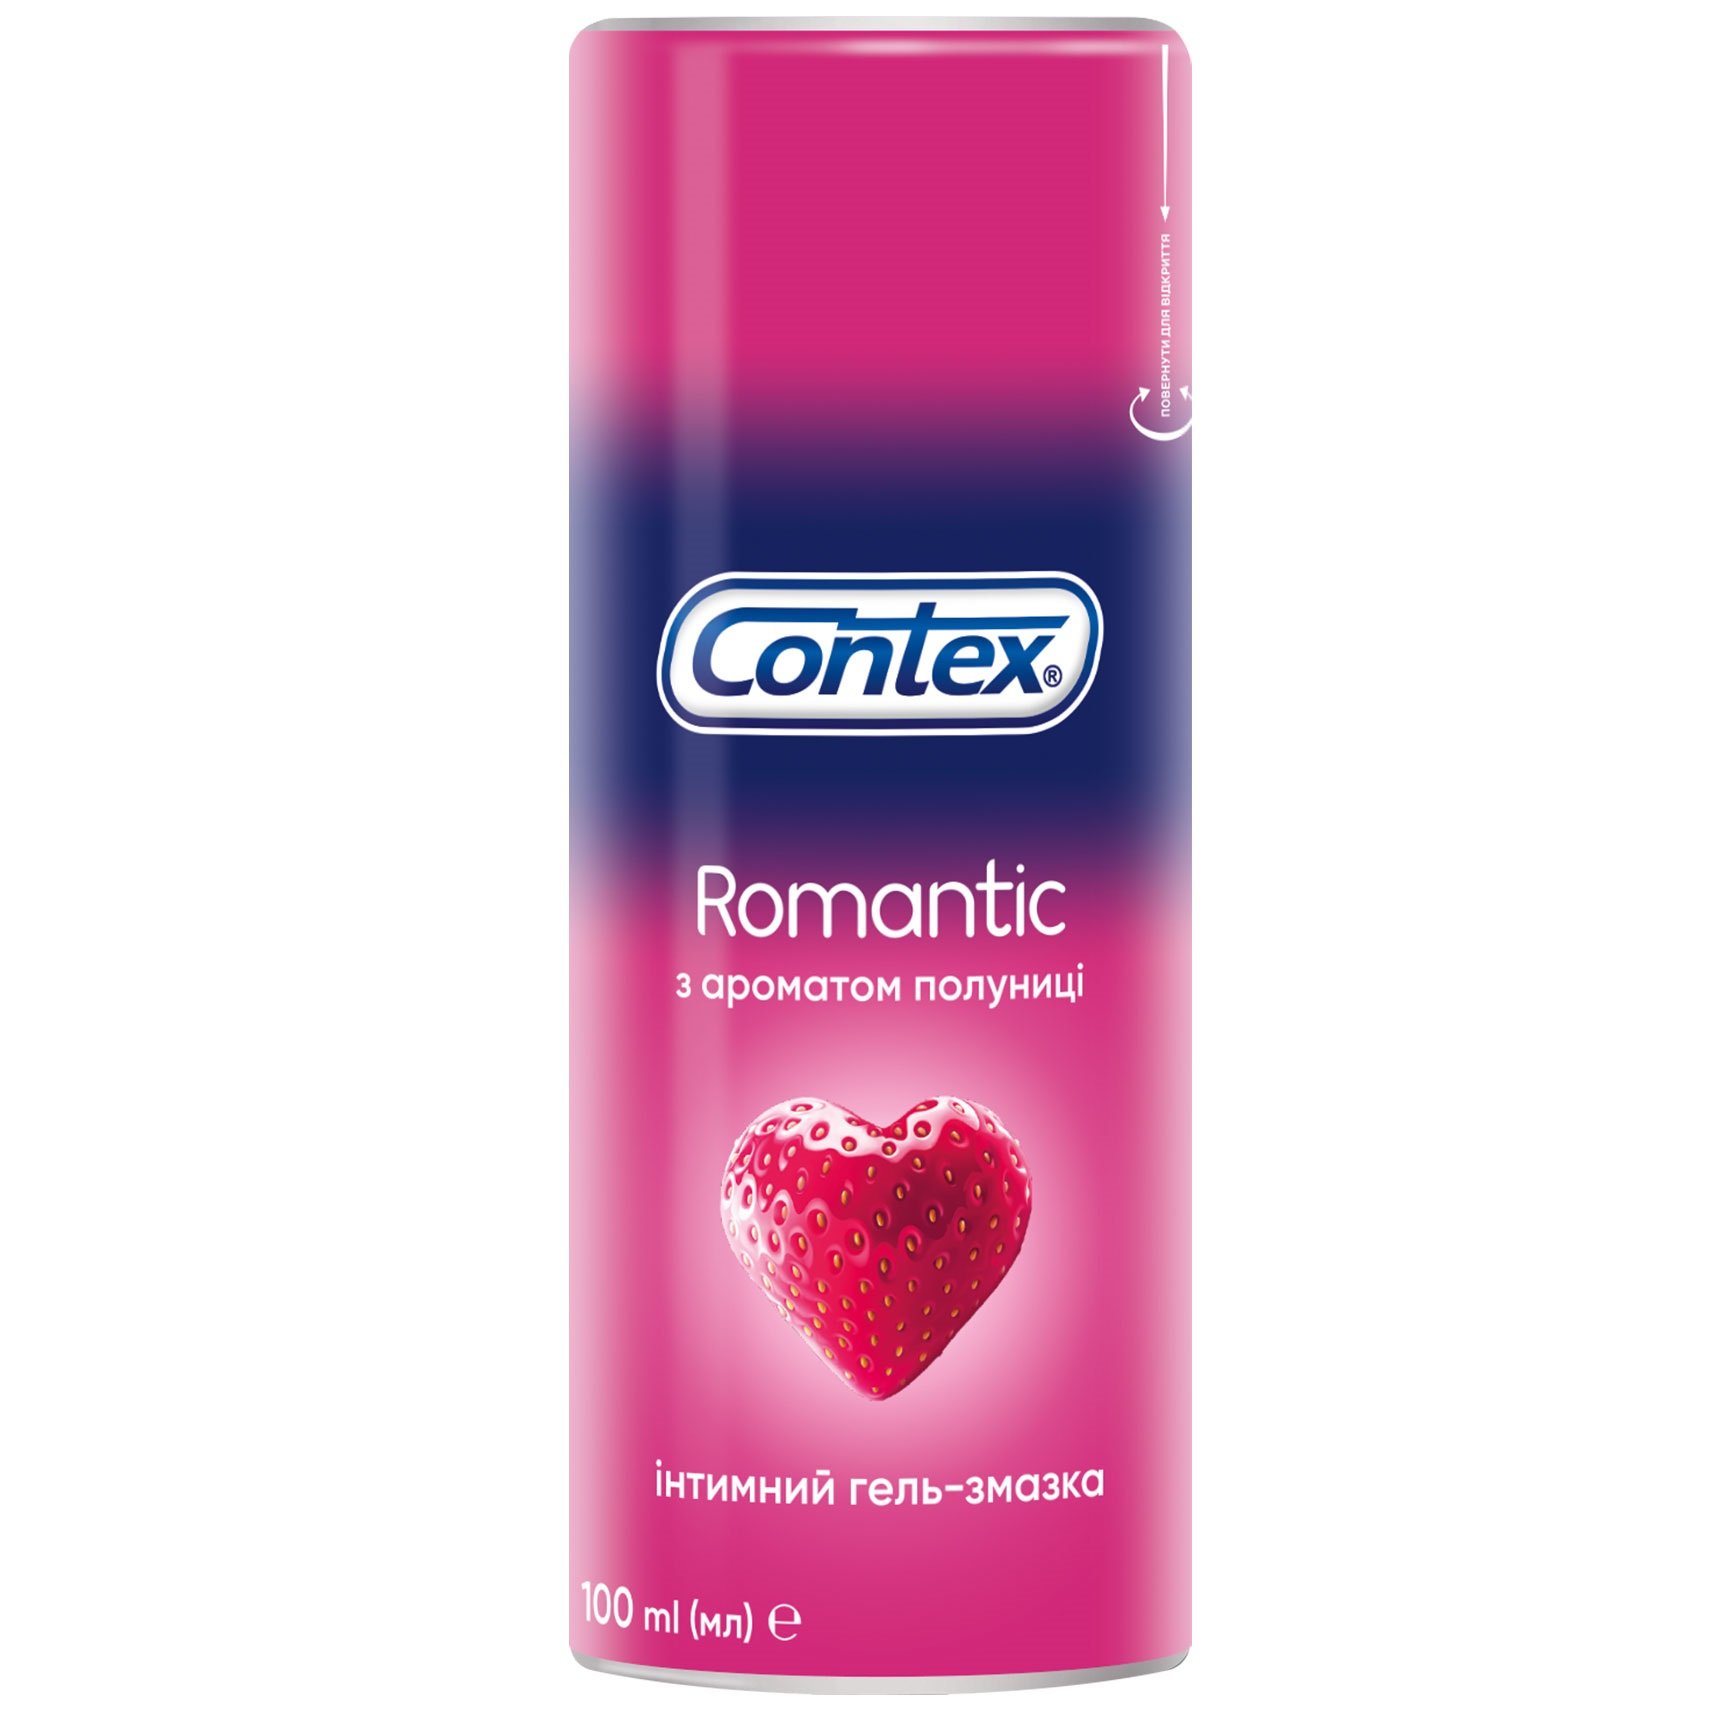 Интимный гель-смазка Contex Romantic с ароматом клубники (лубрикант), 100 мл (8159537) - фото 1